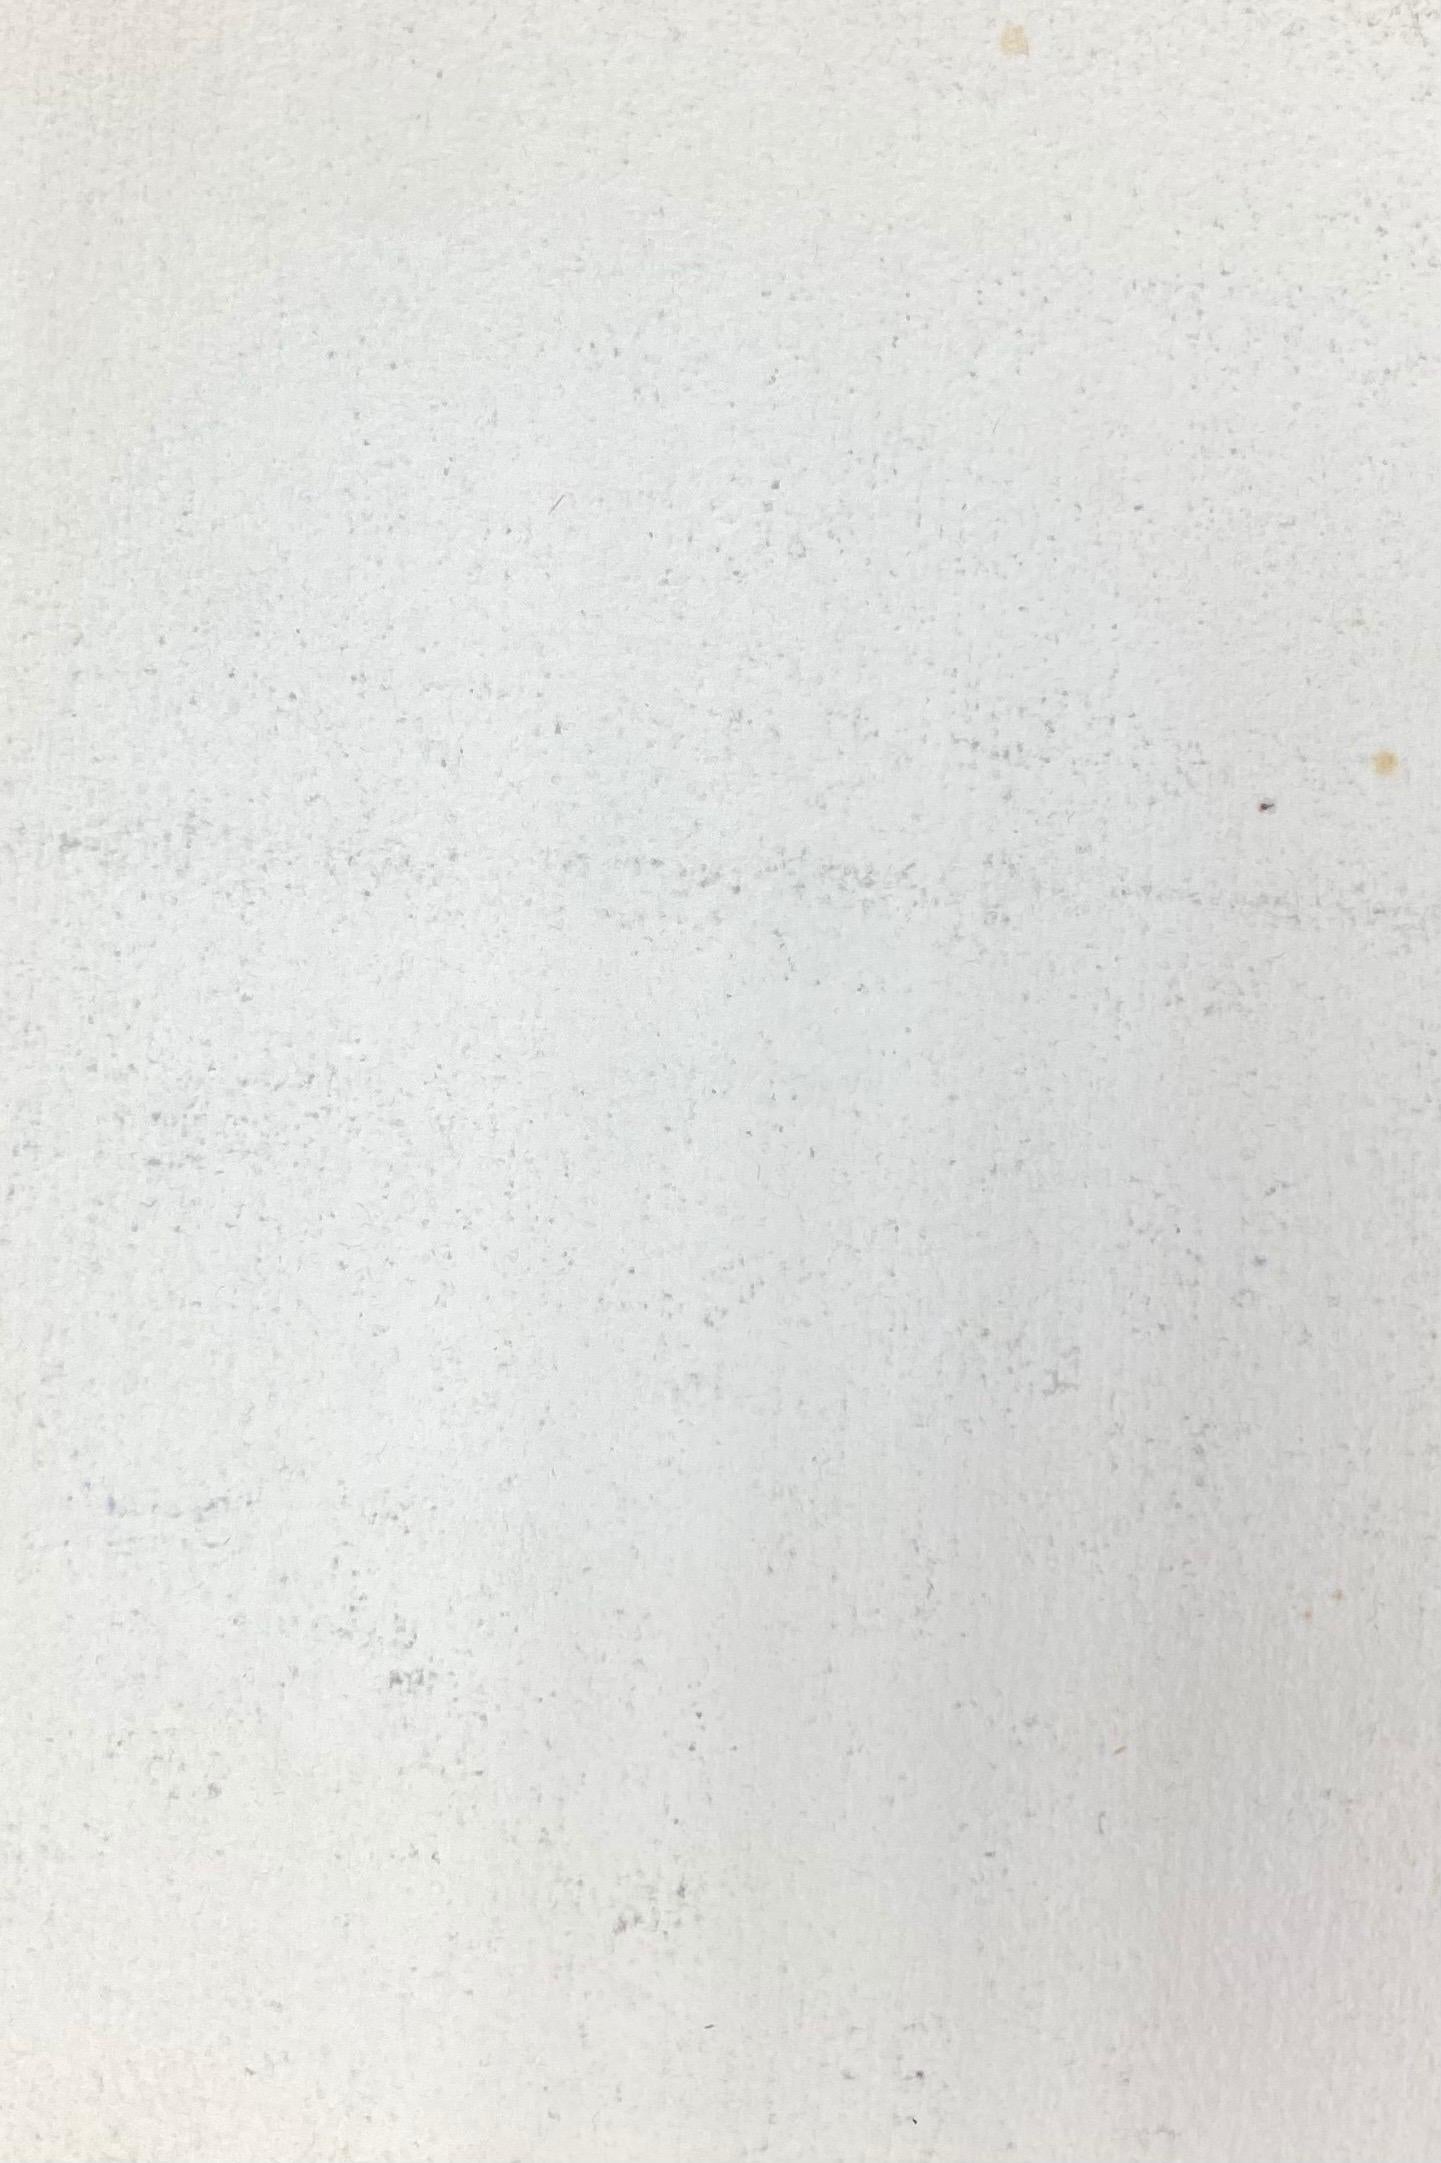 AKOS BIRO (UNGARISCH 1911-2002)
aquarellmalerei
größe: 9 x 6,75 Zoll

Wunderschönes, farbenfrohes Originalgemälde des sehr beliebten und hoch angesehenen ungarisch-französischen Malers Akos Biro (1911-2002).

Das Gemälde hat eine tadellose